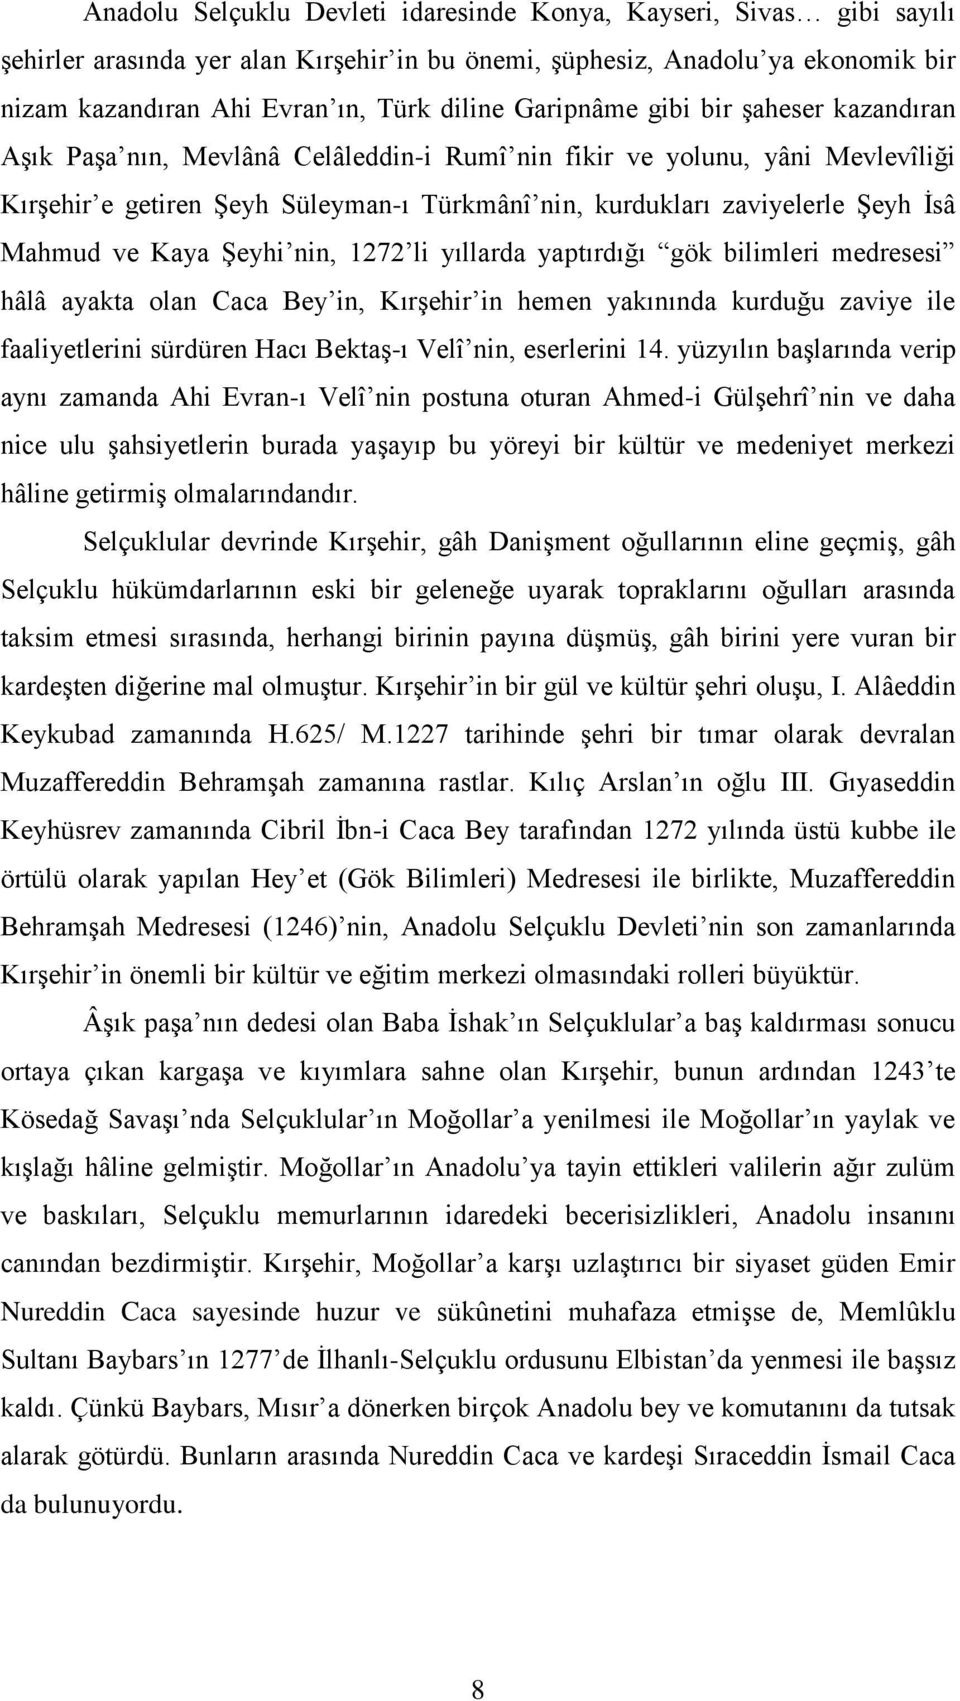 Mahmud ve Kaya Şeyhi nin, 1272 li yıllarda yaptırdığı gök bilimleri medresesi hâlâ ayakta olan Caca Bey in, Kırşehir in hemen yakınında kurduğu zaviye ile faaliyetlerini sürdüren Hacı Bektaş-ı Velî